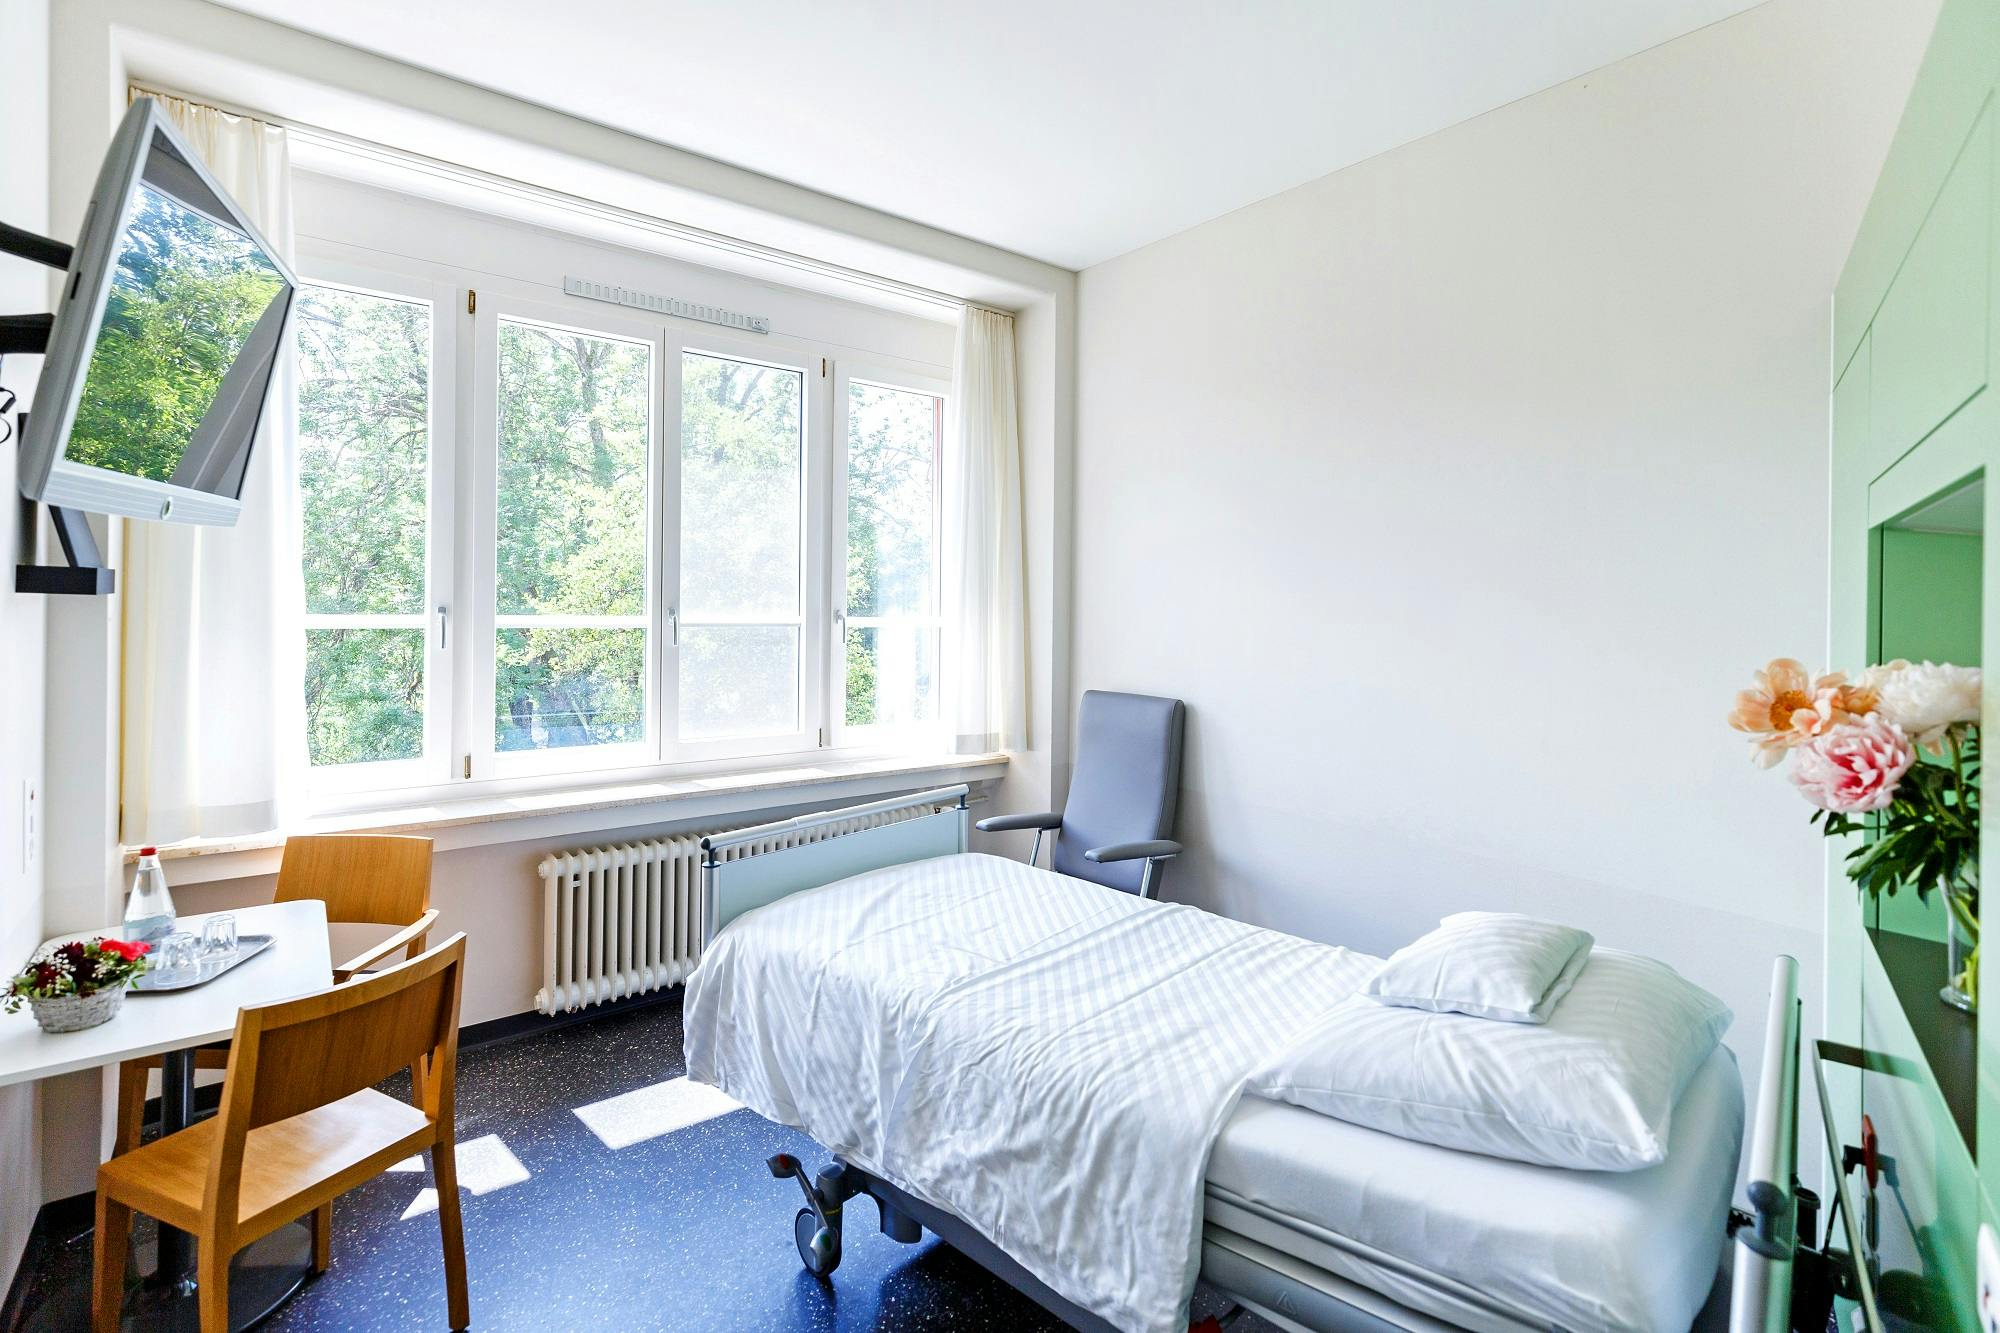 Helles, einfaches Schlafzimmer mit Einzelbett und Schreibtisch an Fensterfront.